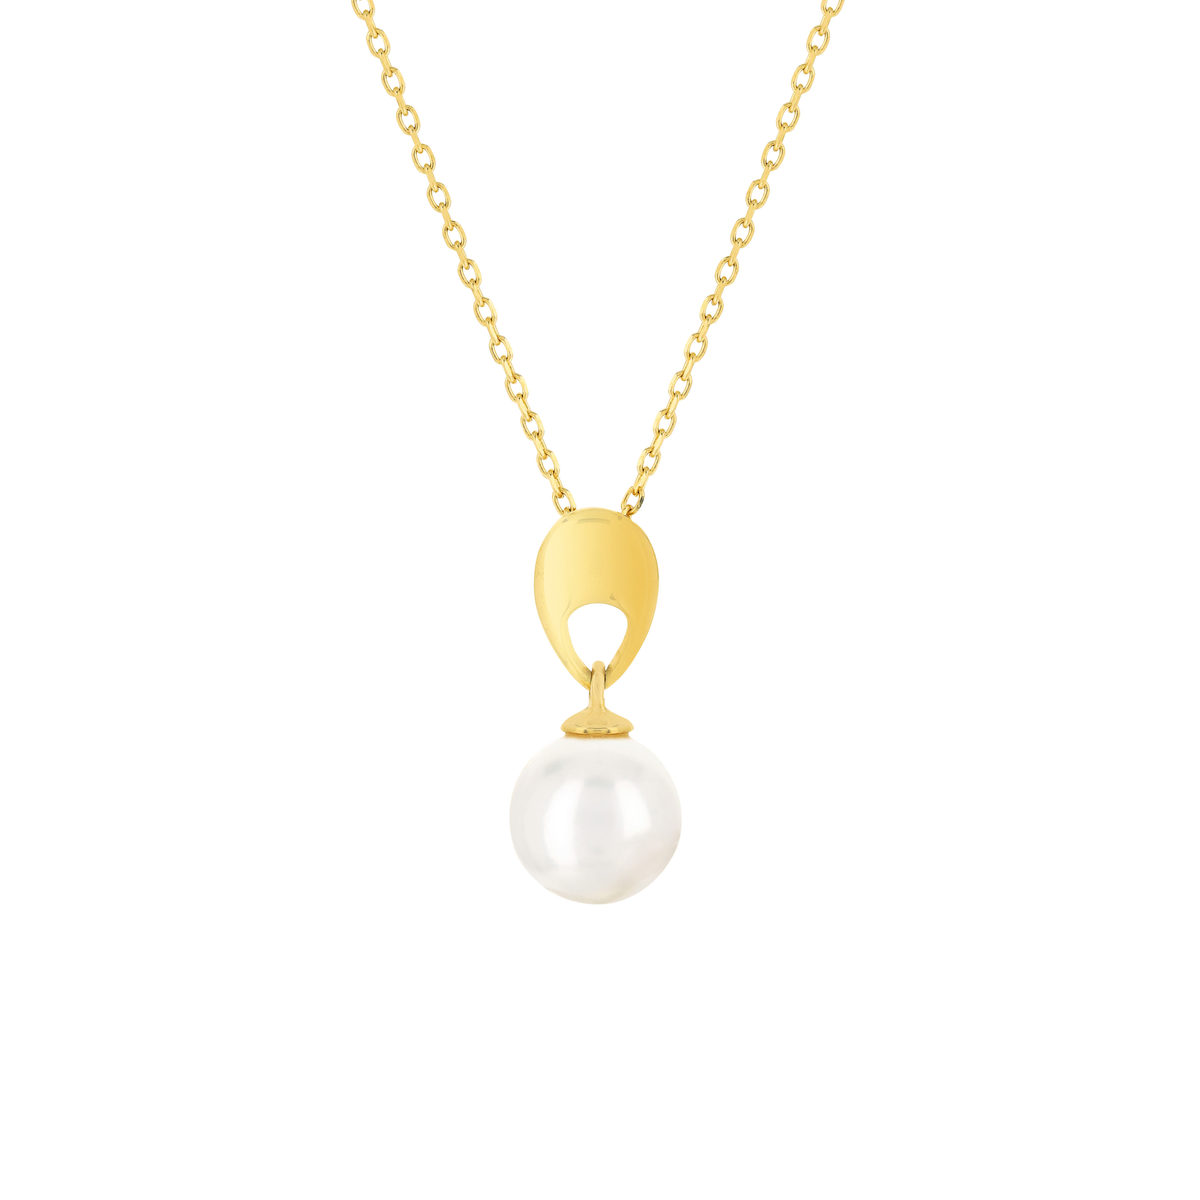 Collier or jaune 375, perle de culture de Chine. Longueur 45 cm.